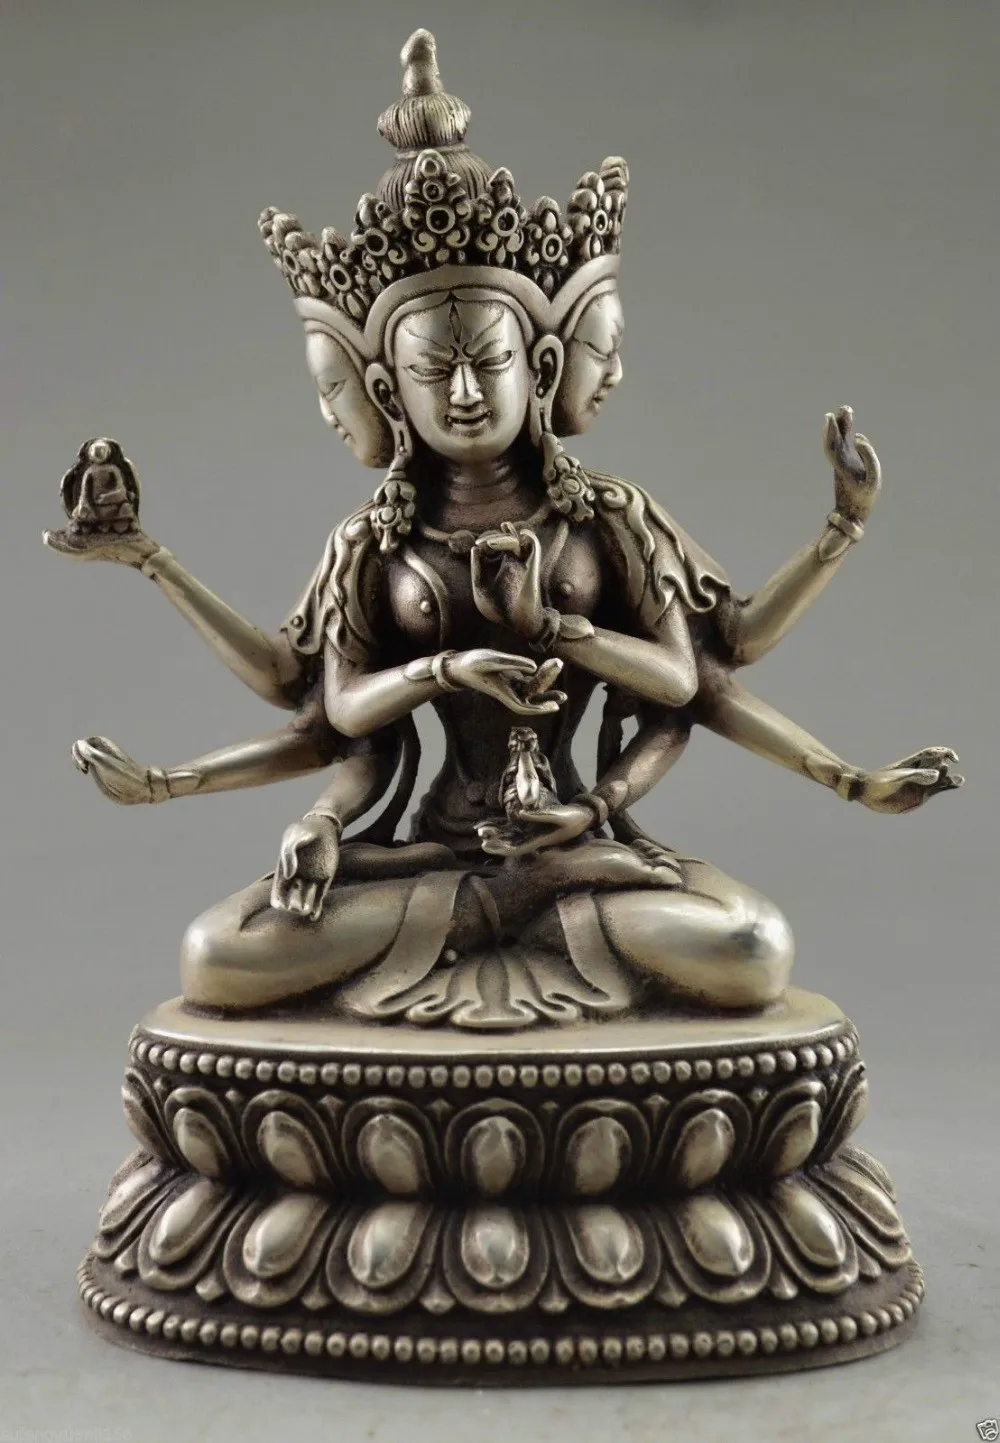 

Коллекционная декоративная старинная ручная работа тибетская Серебряная резная статуя Будды с 3 головами и 6 руками